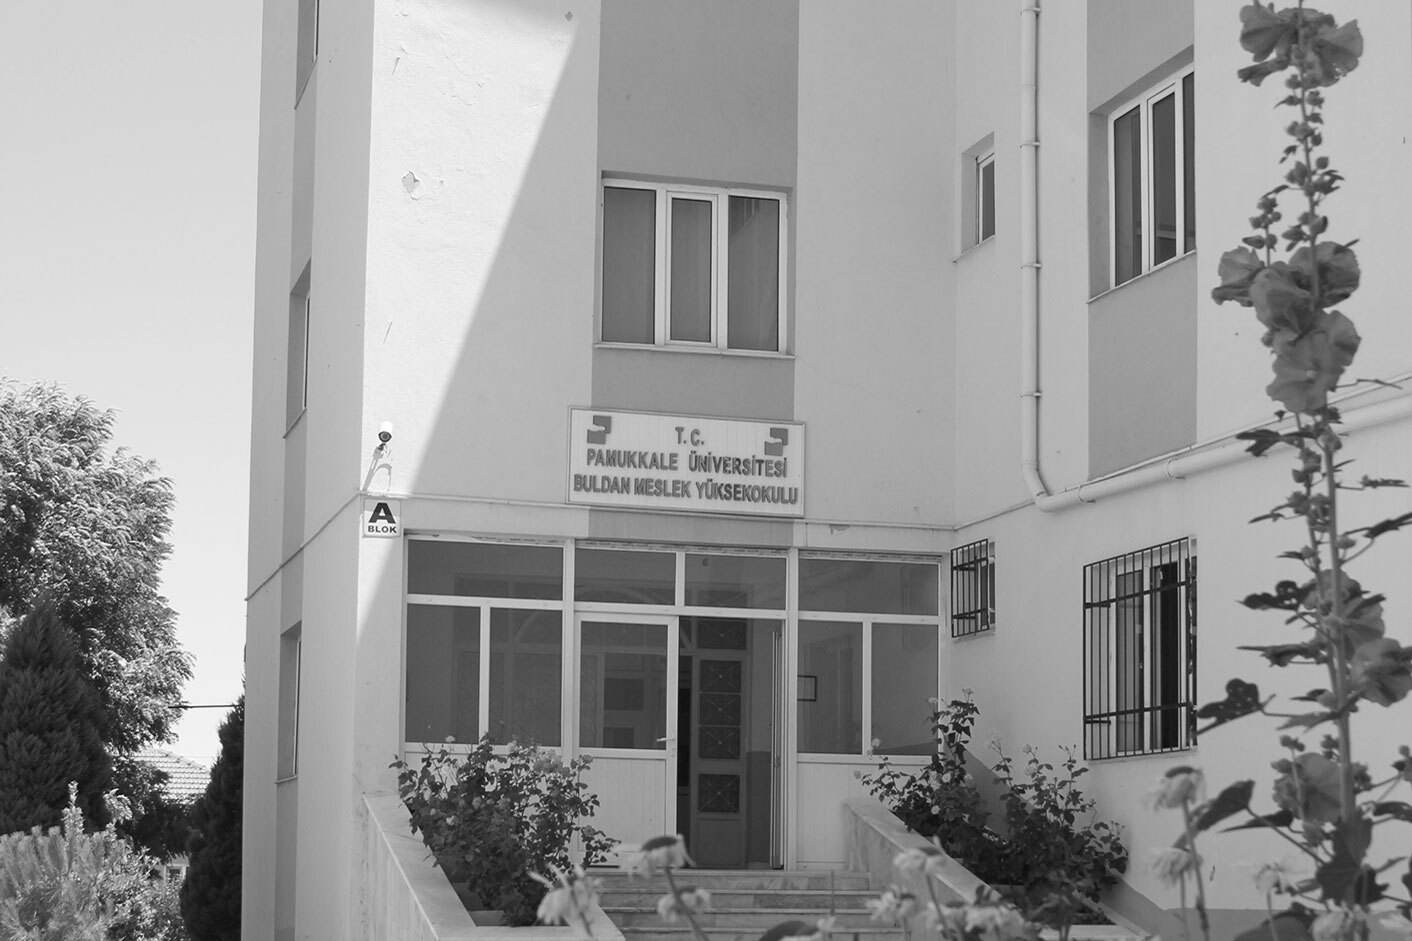 Pamukkale Üniversitesi Buldan Meslek Yüksekokulu